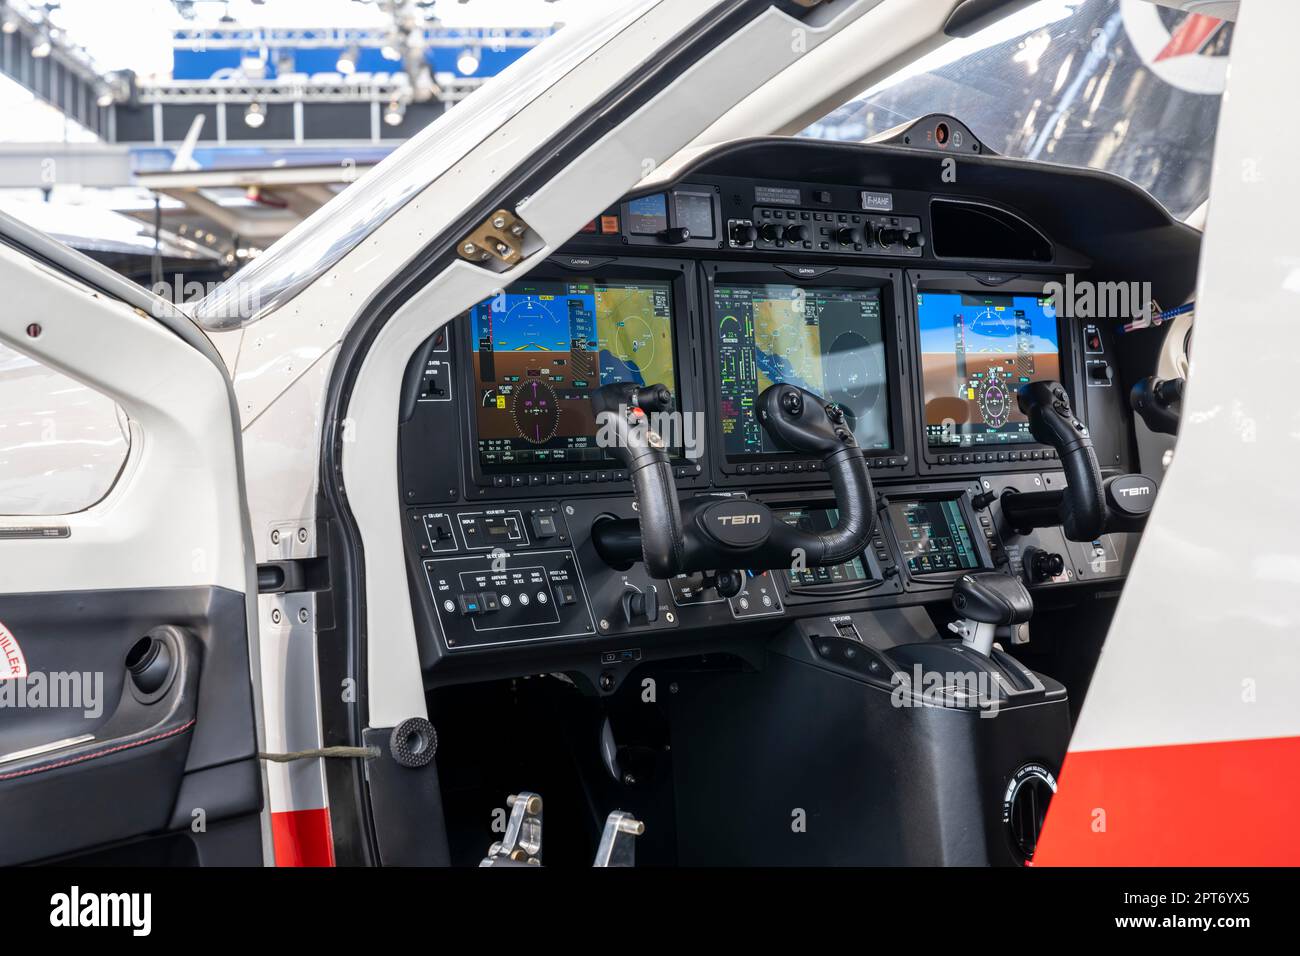 Digitales Cockpit, auch Glascockpit genannt, mit Avioniksystem G1000 des Herstellers Garmin in einem TBM 940 Turboprop-Geschäftsflugzeug der Stockfoto